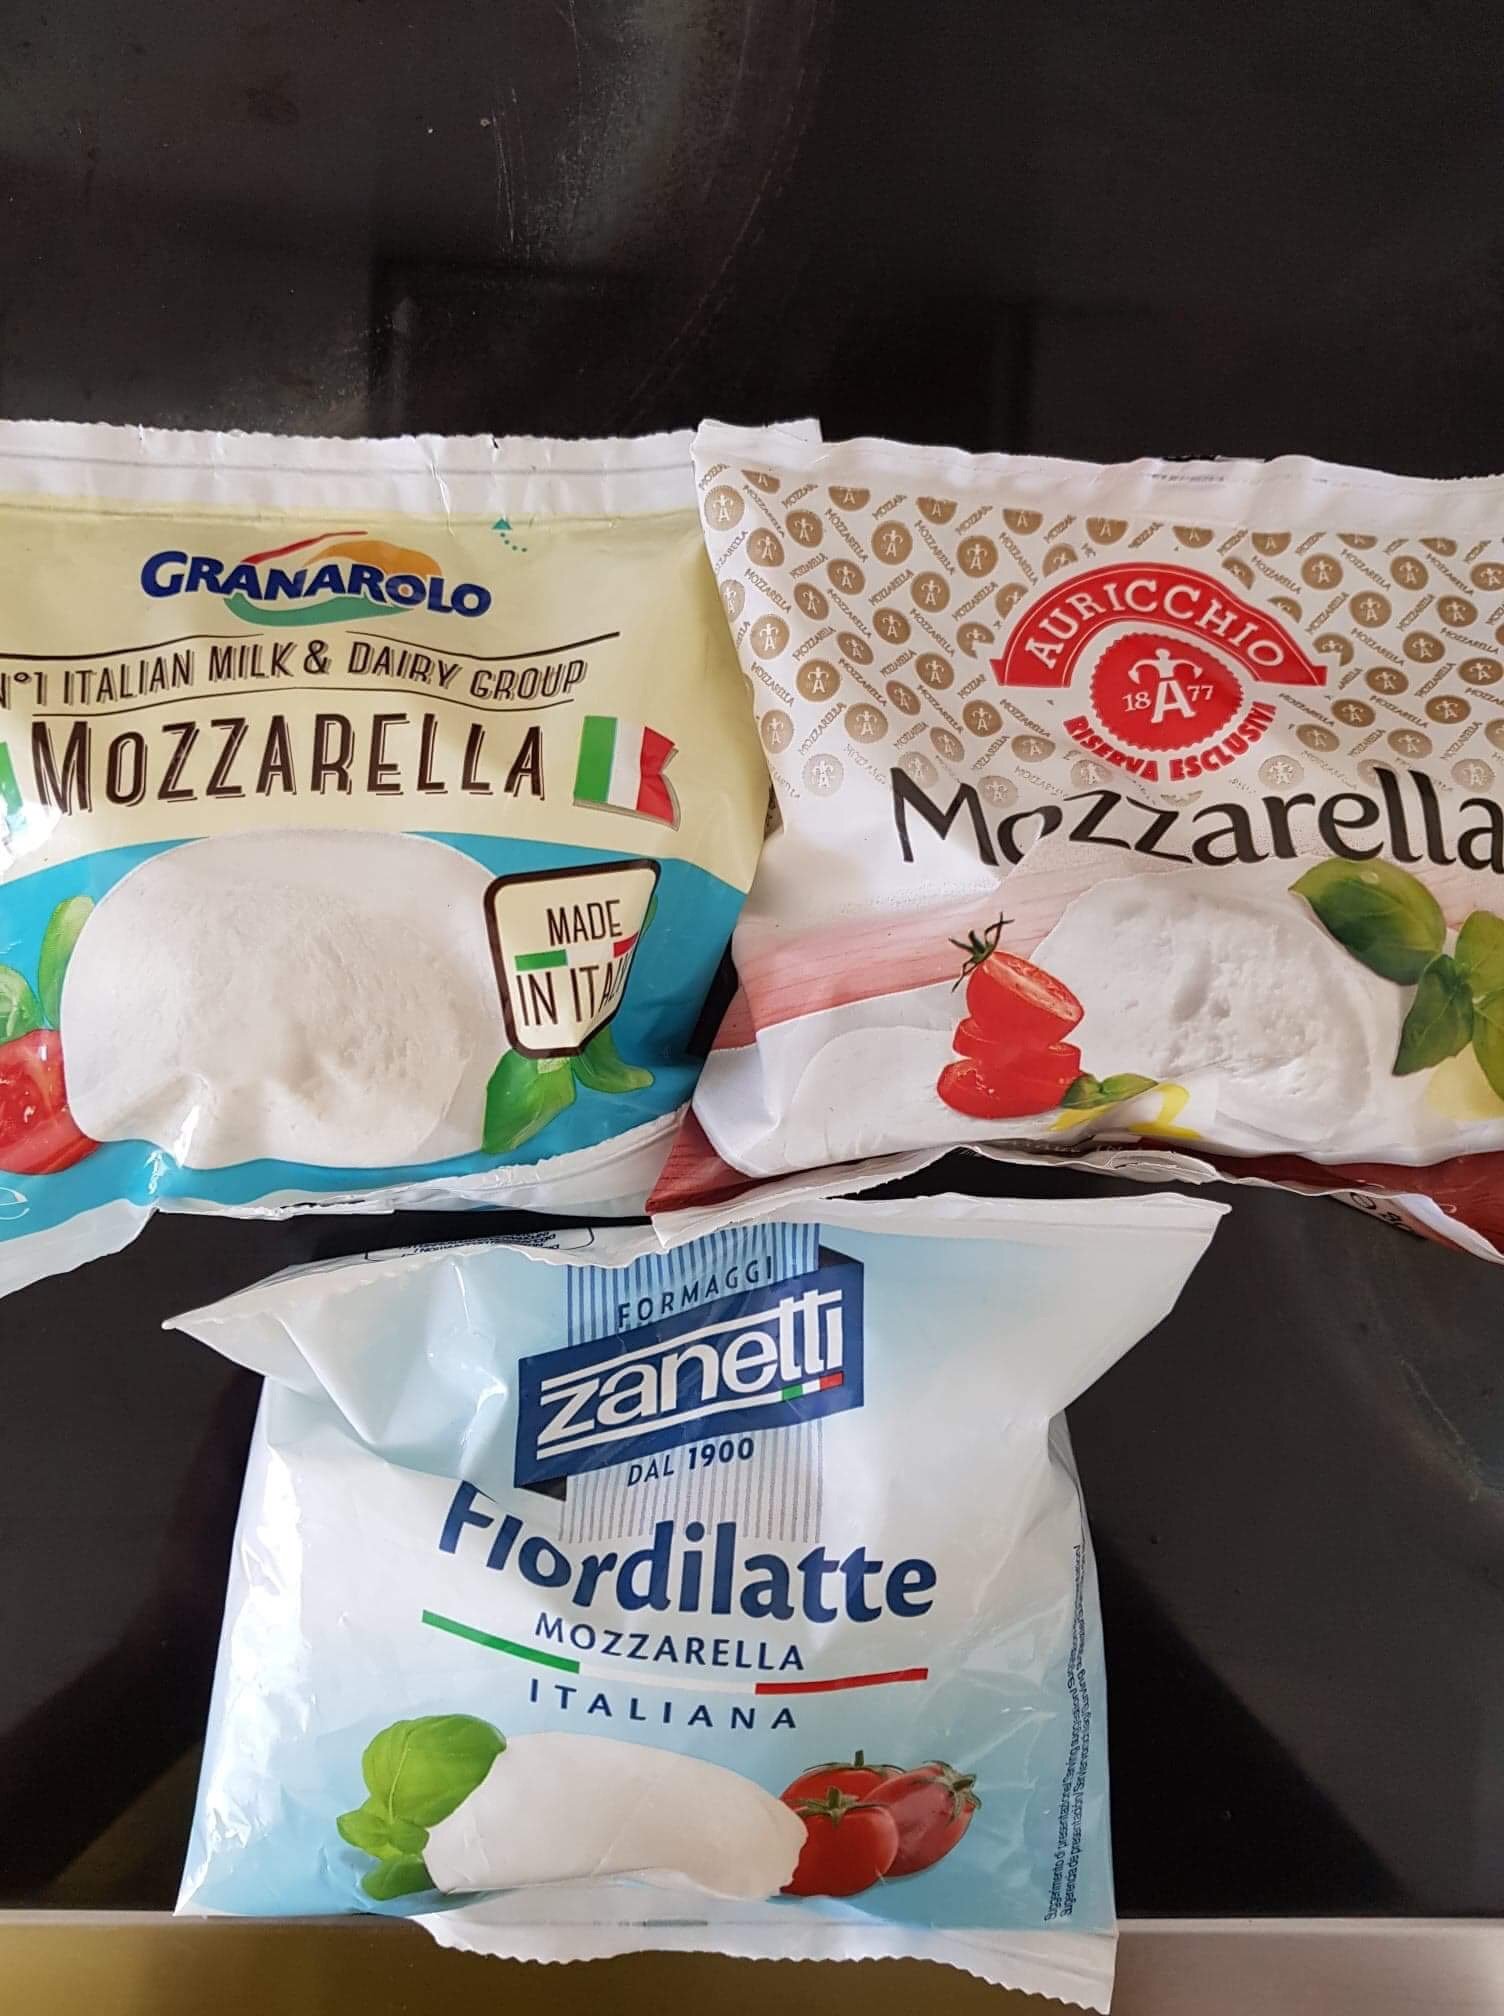 Mozzarella fior di latte : quoi, où, comment ?